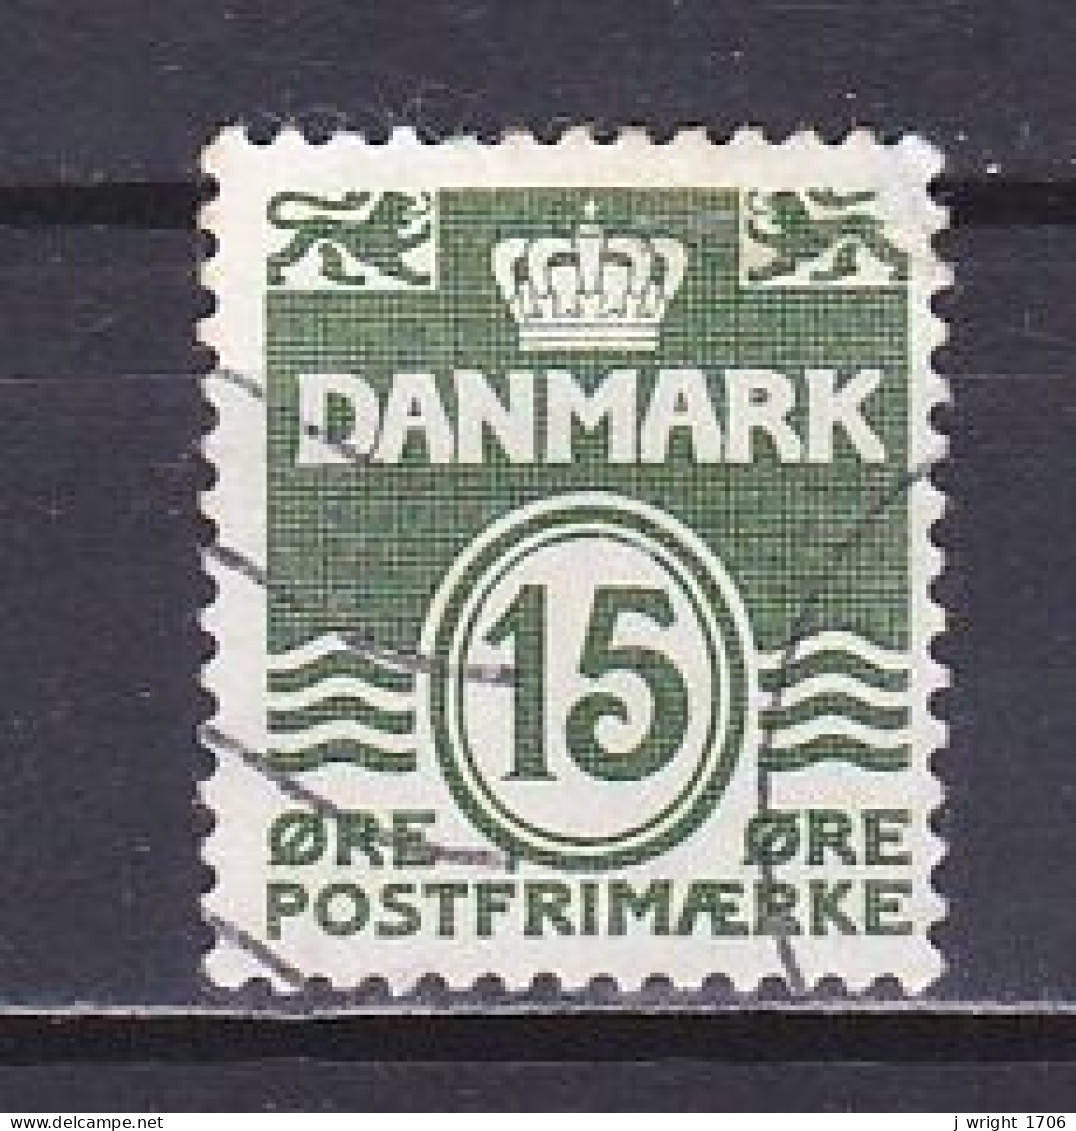 Denmark, 1963, Numeral & Wave Lines, 15ø, USED - Usado